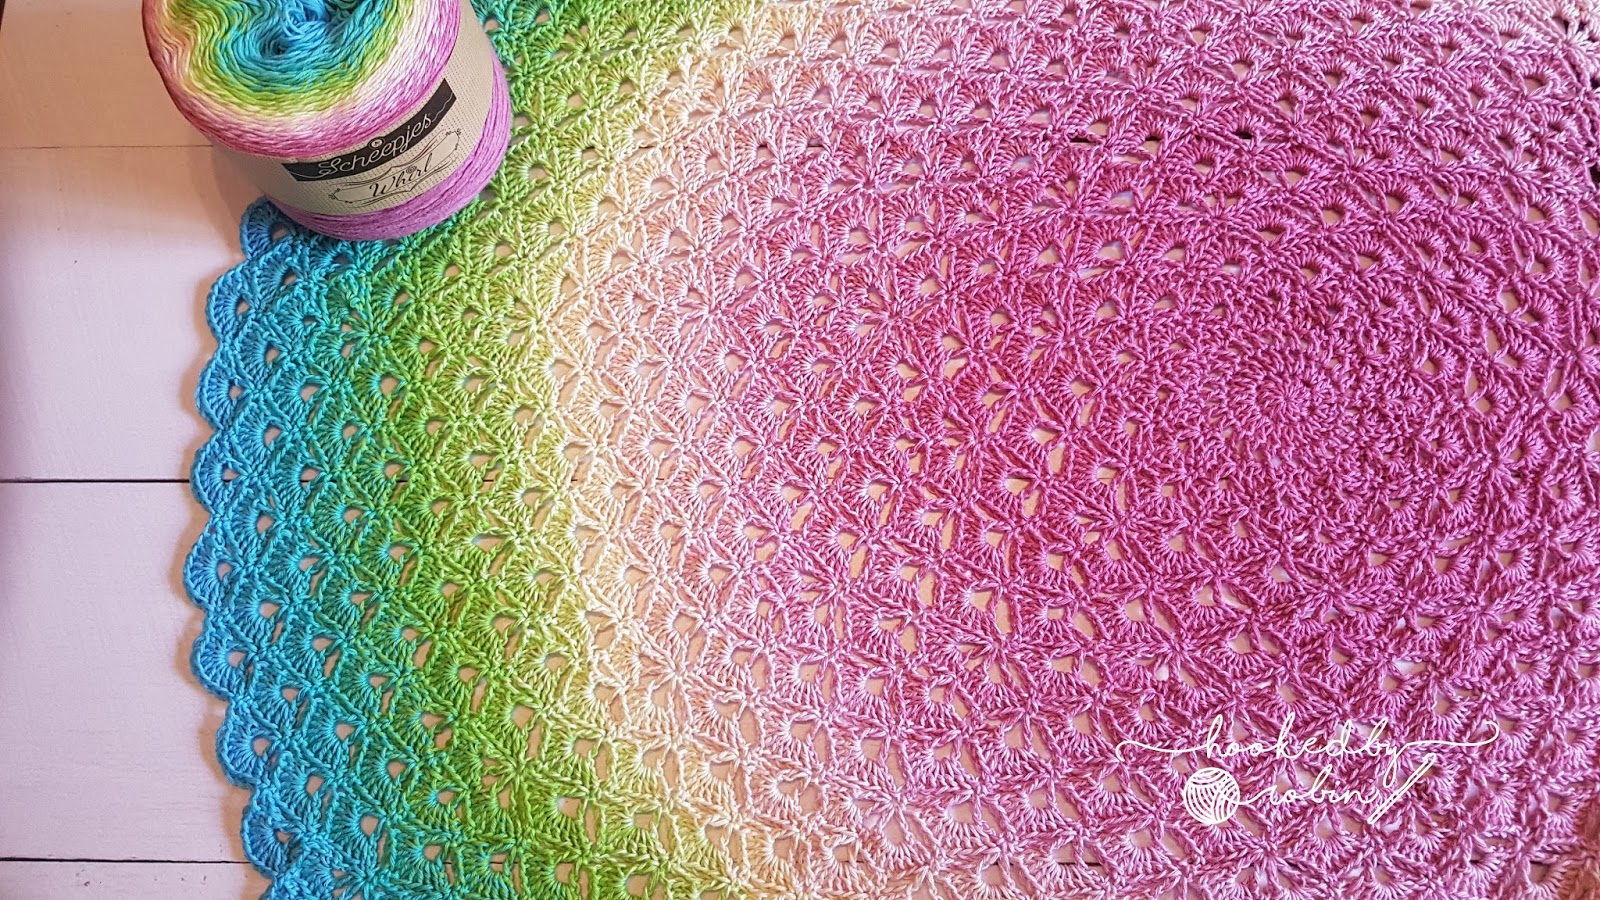 Crochet Round Afghan Pattern Free Lotus Flower Blanket Free Crochet Circle Blanket Pattern And Video